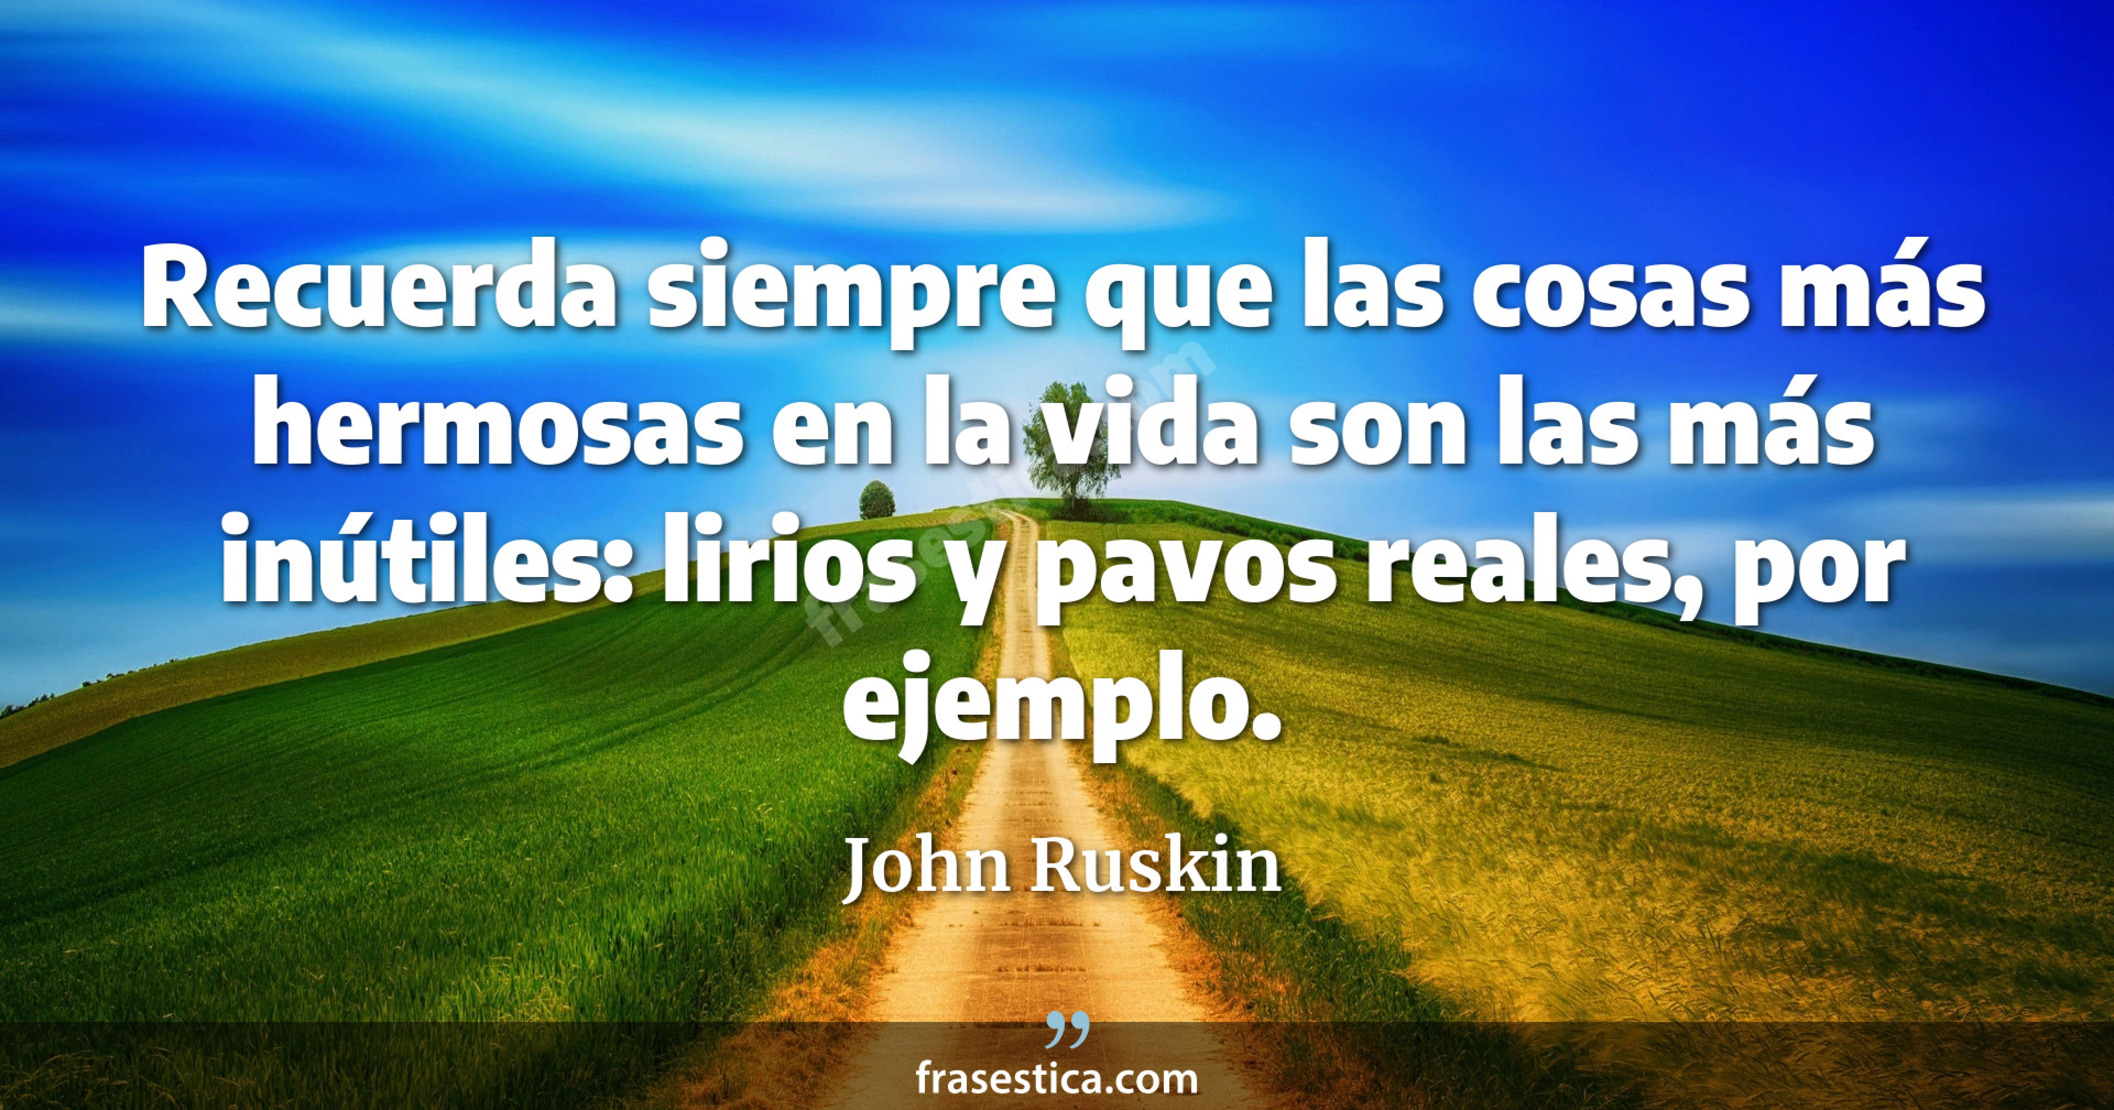 Recuerda siempre que las cosas más hermosas en la vida son las más inútiles: lirios y pavos reales, por ejemplo. - John Ruskin